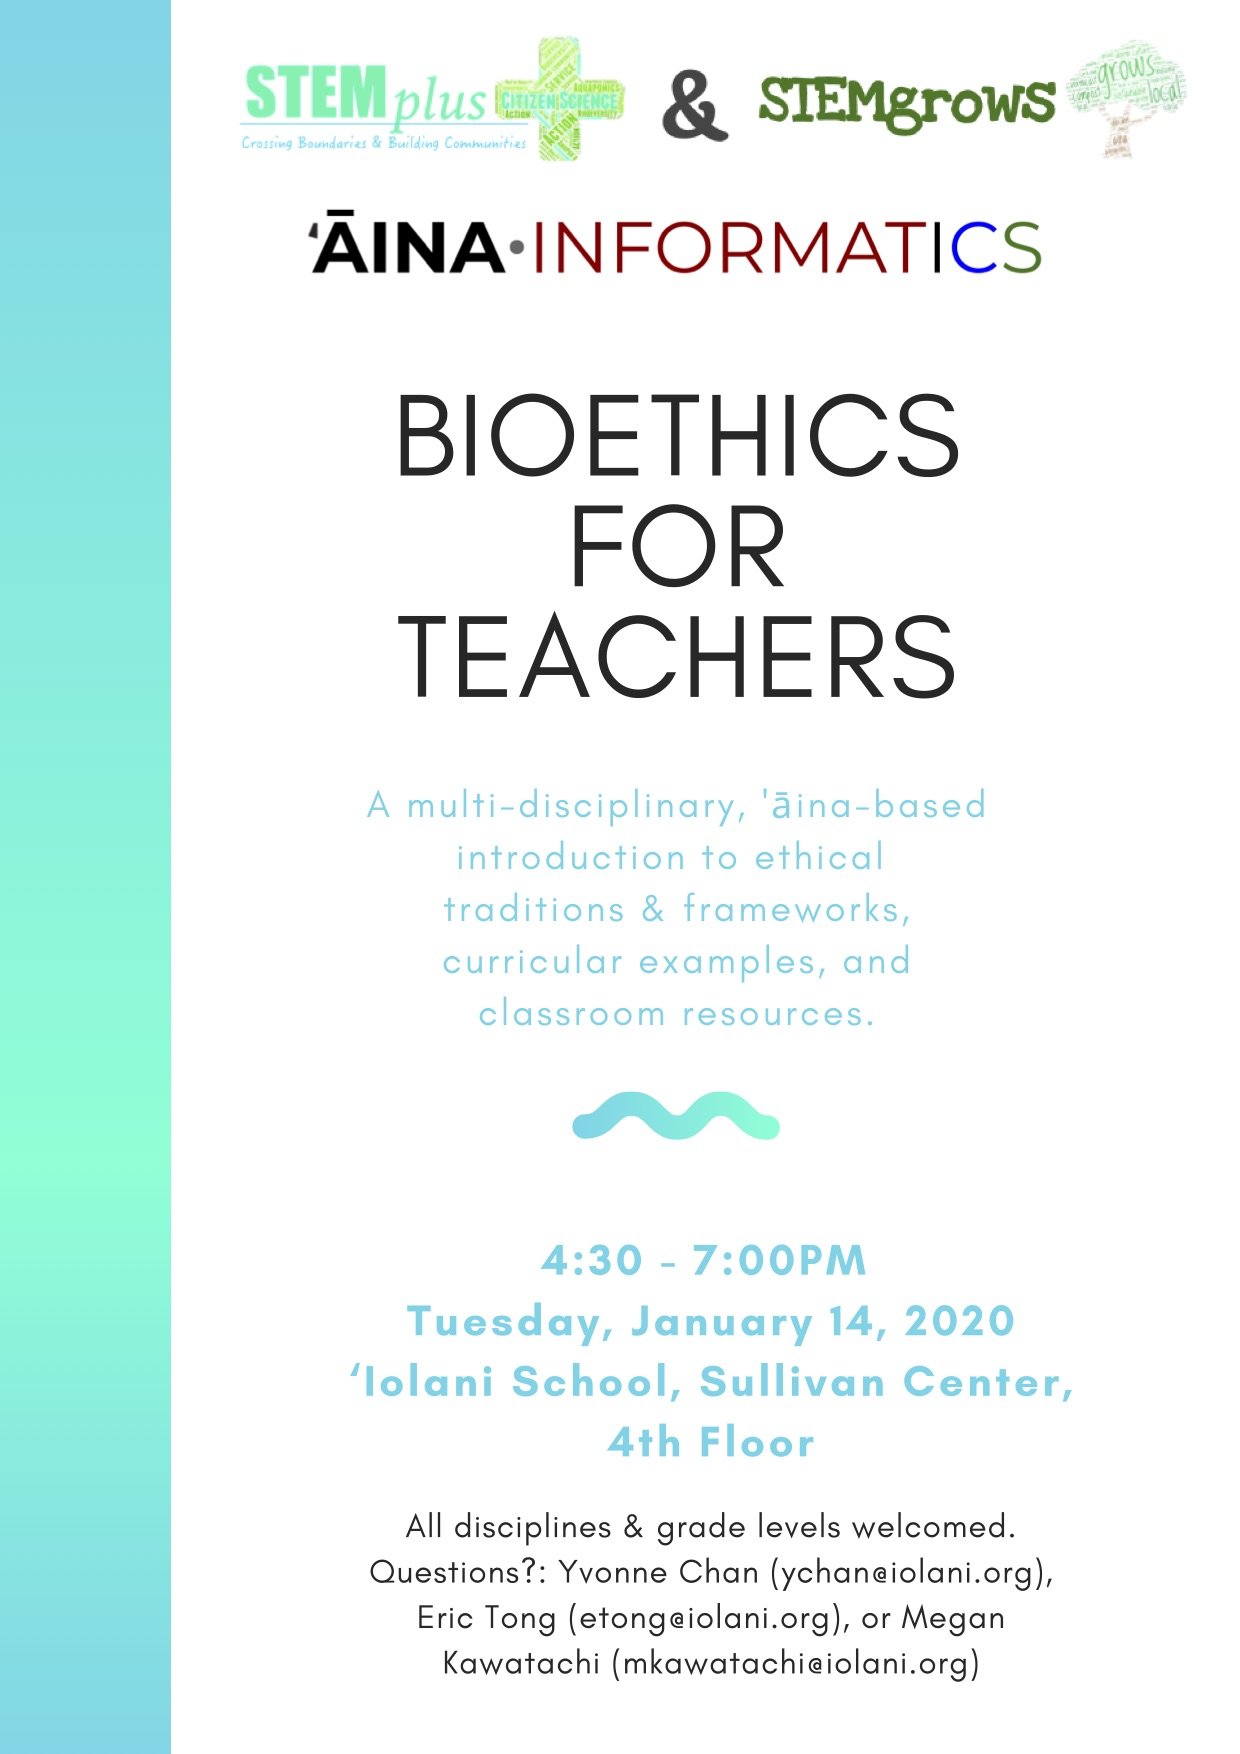 2020 Bioethics for teachers flyer.jpeg